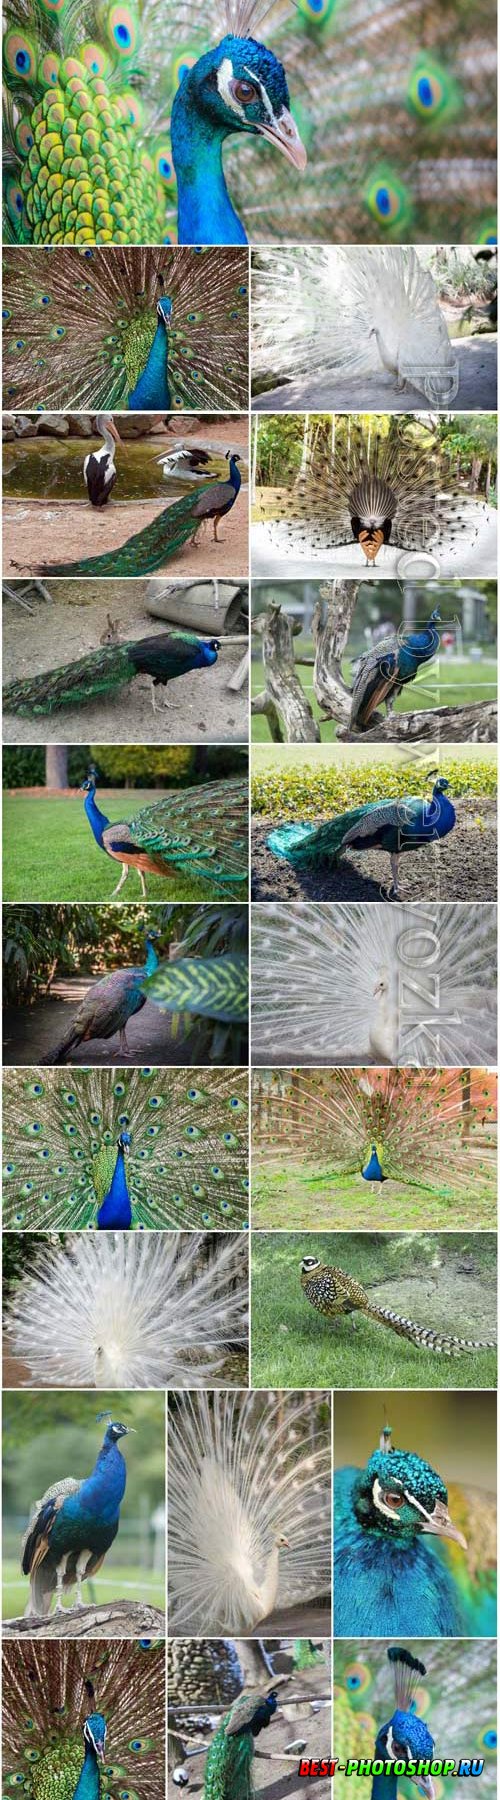 Luxurious birds peacocks stock photo